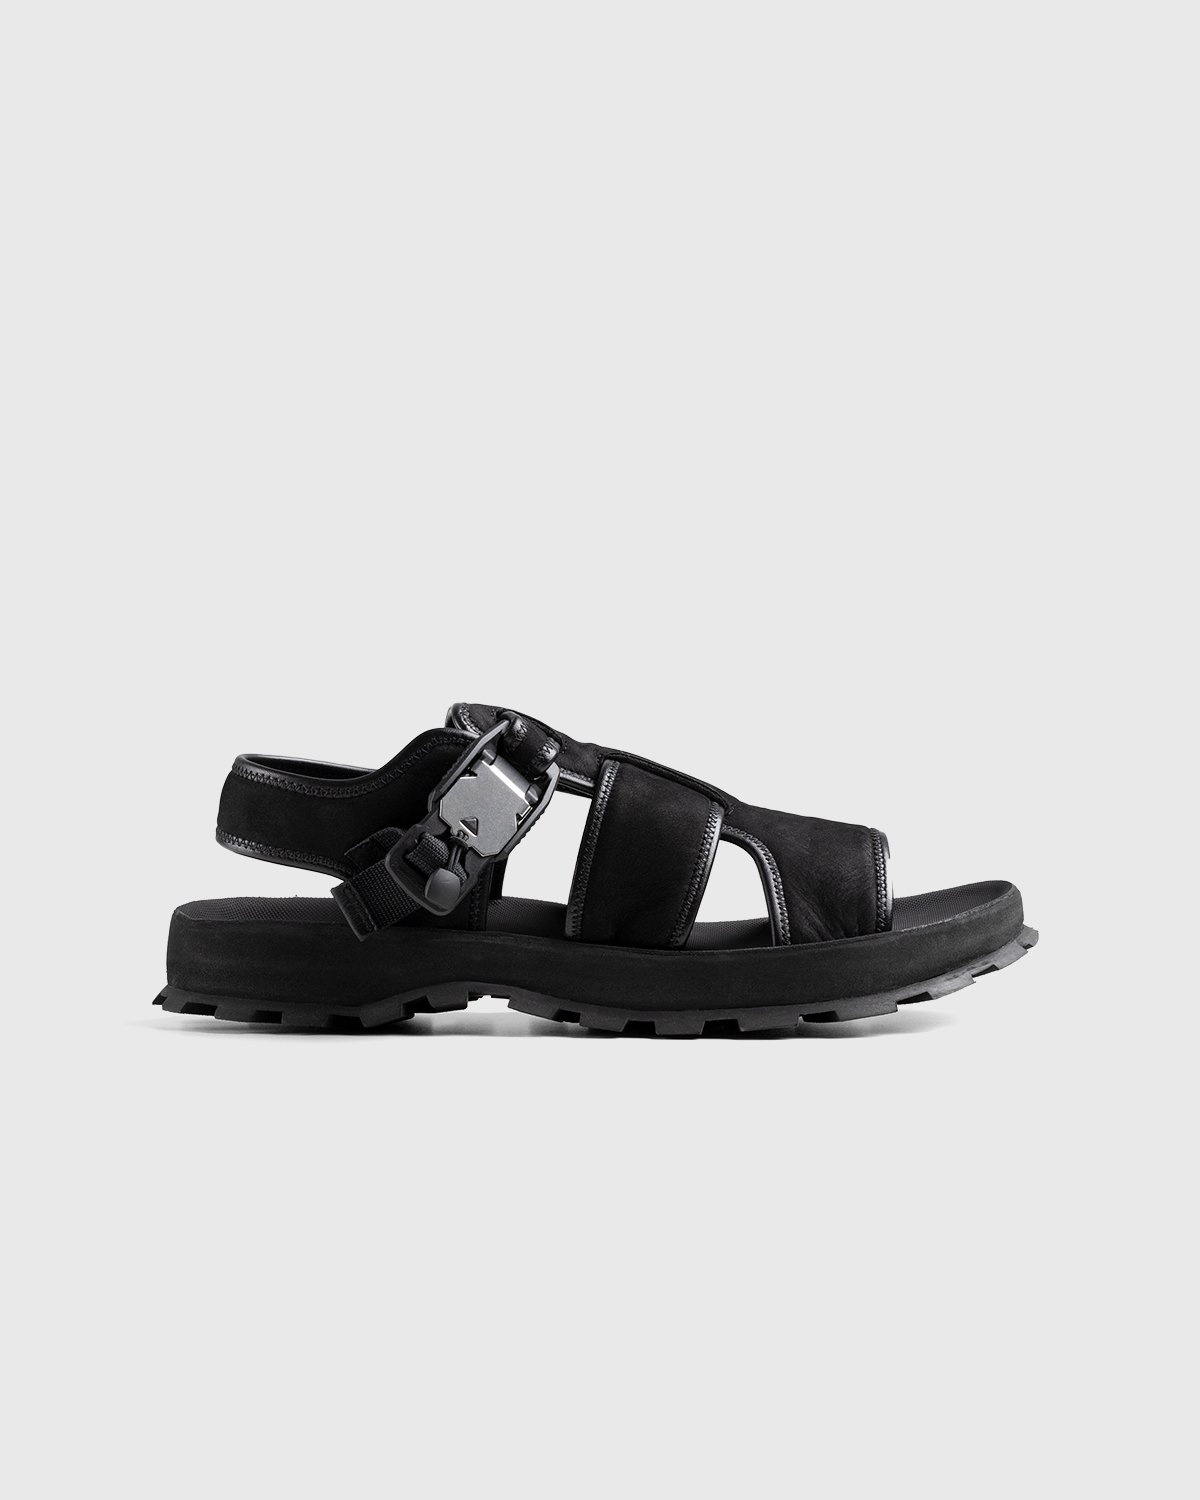 Jil Sander – Calfskin Leather Sandal Black - Sandals - Black - Image 1